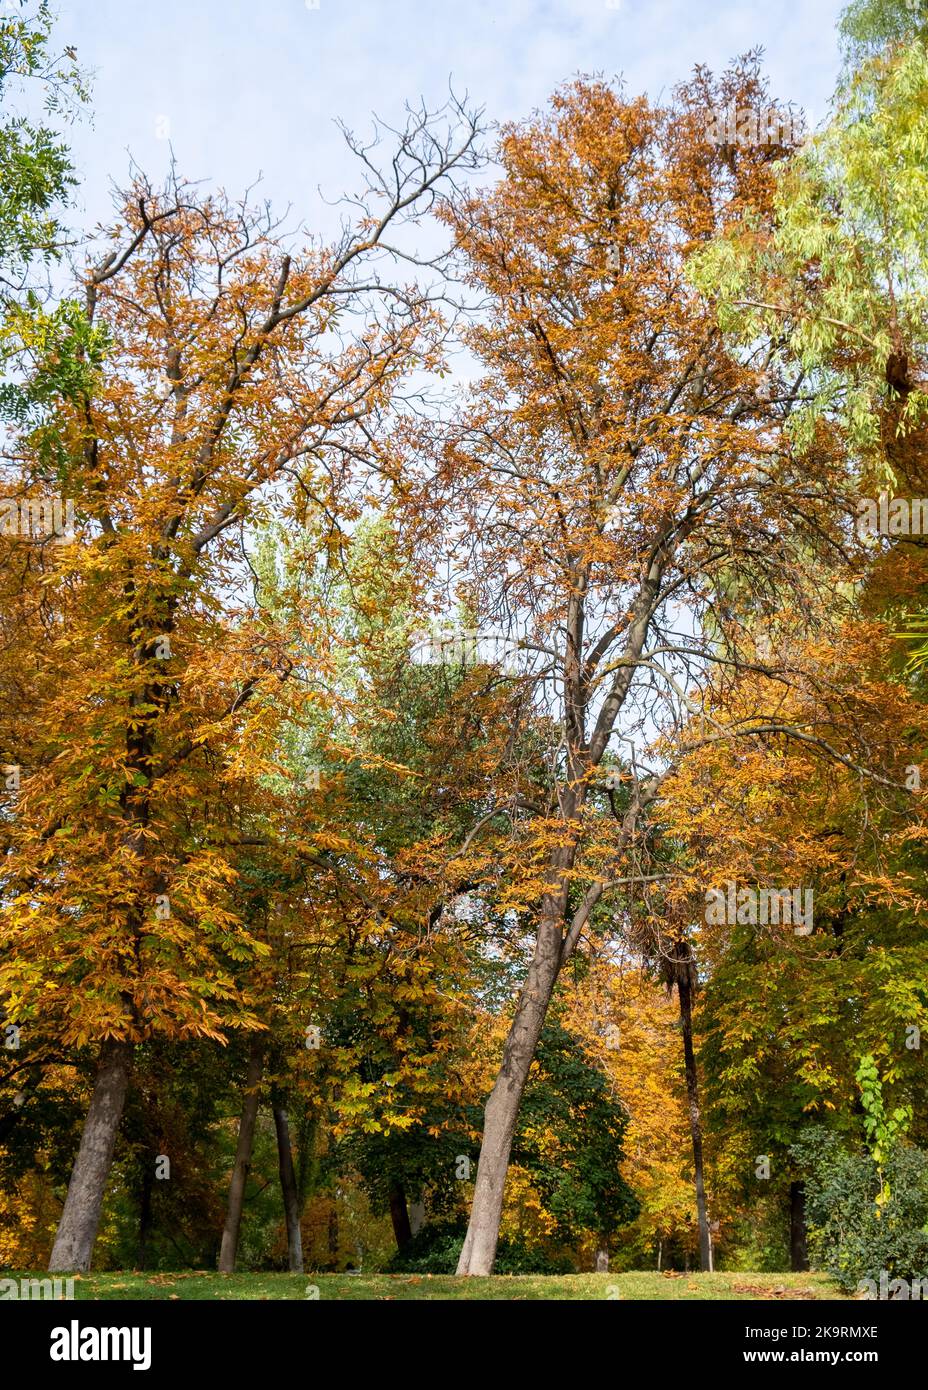 Automatische Szene. Bäume mit grünen und orangefarbenen Blättern in einem Stadtpark Stockfoto